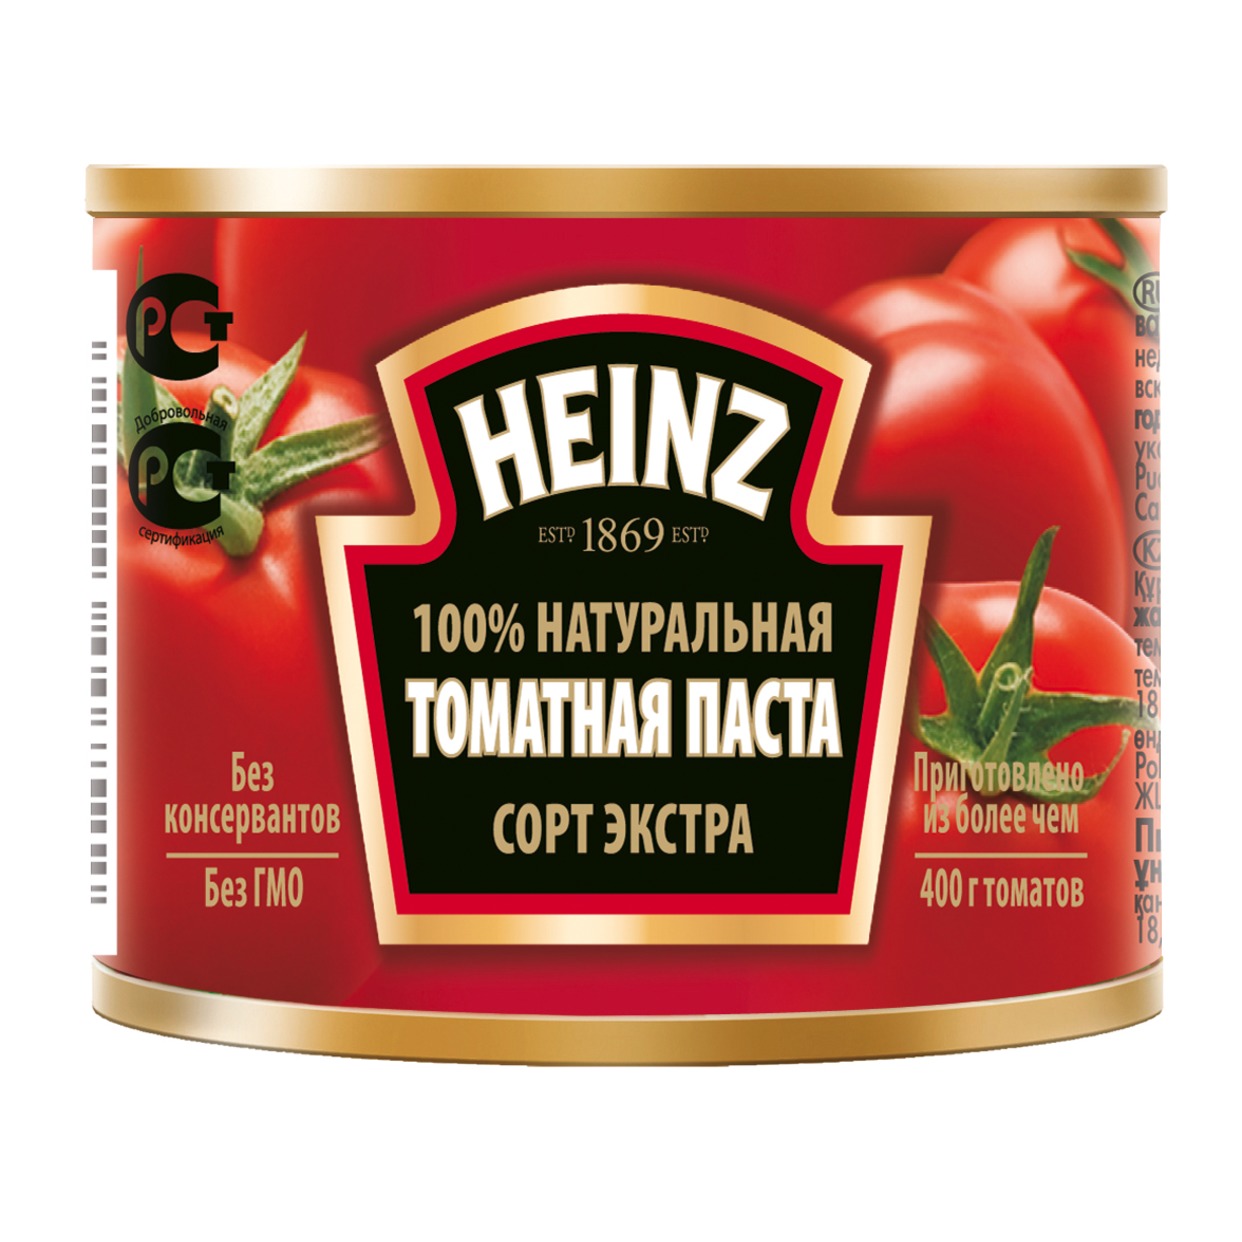 HEINZ Паста томатная ж/б 70г по акции в Пятерочке